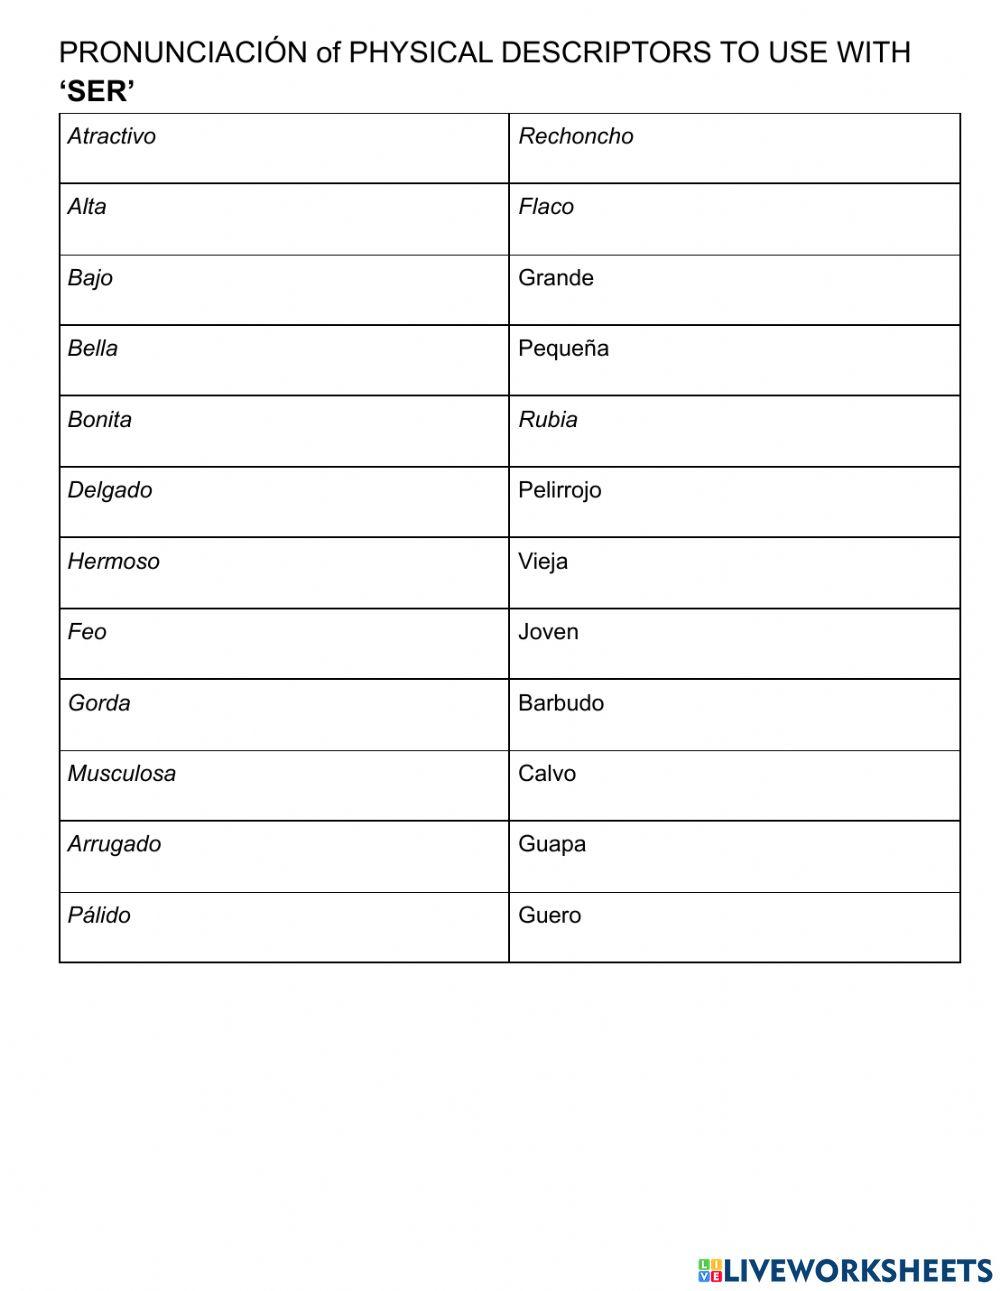 Pronunciation-descriptors with SER